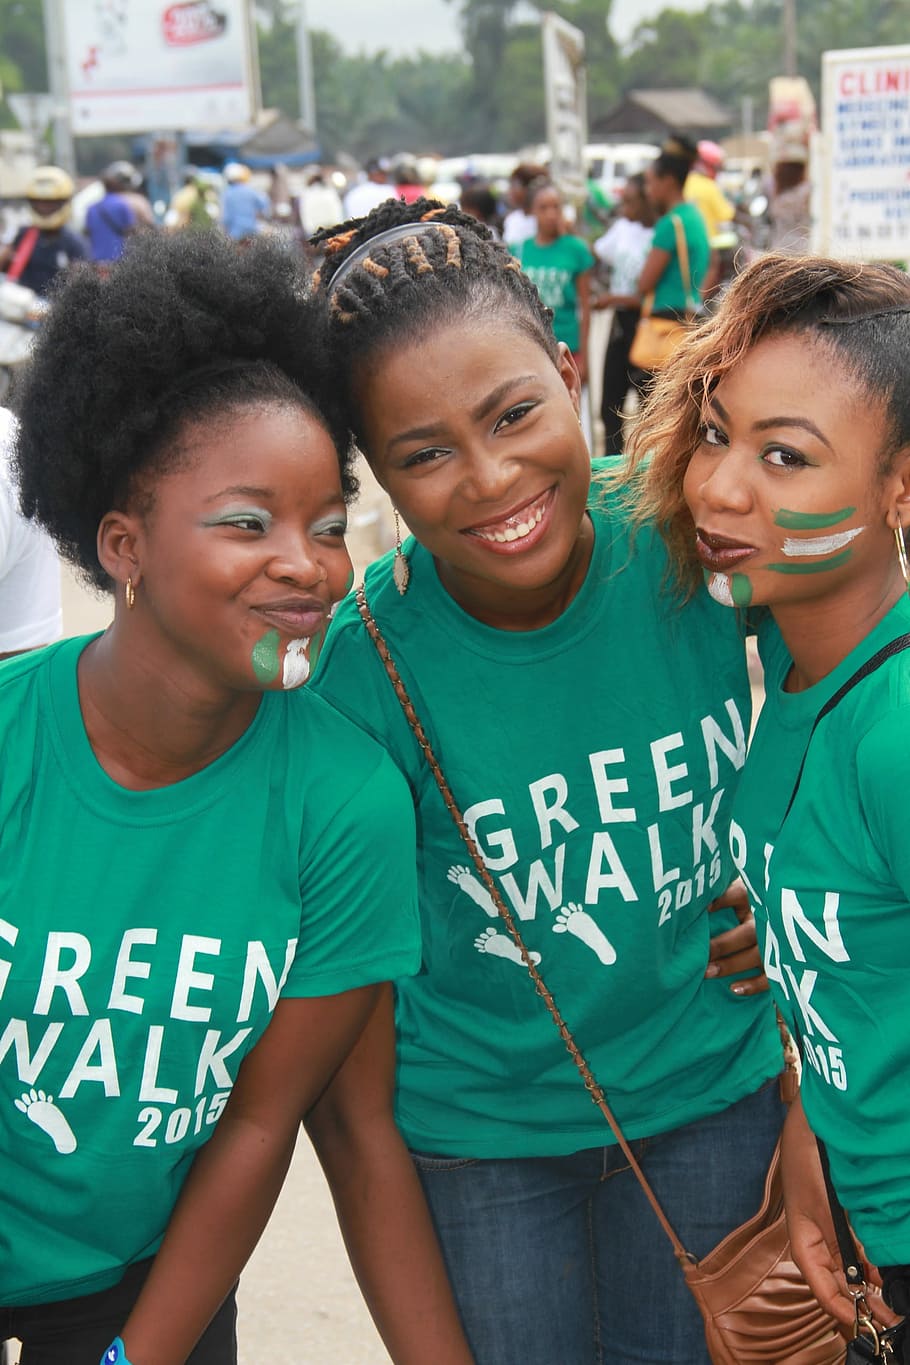 Young, Girls, Smile, Niger, Cotonou, green walk, happy face, ceria, berdiri, tampilan depan